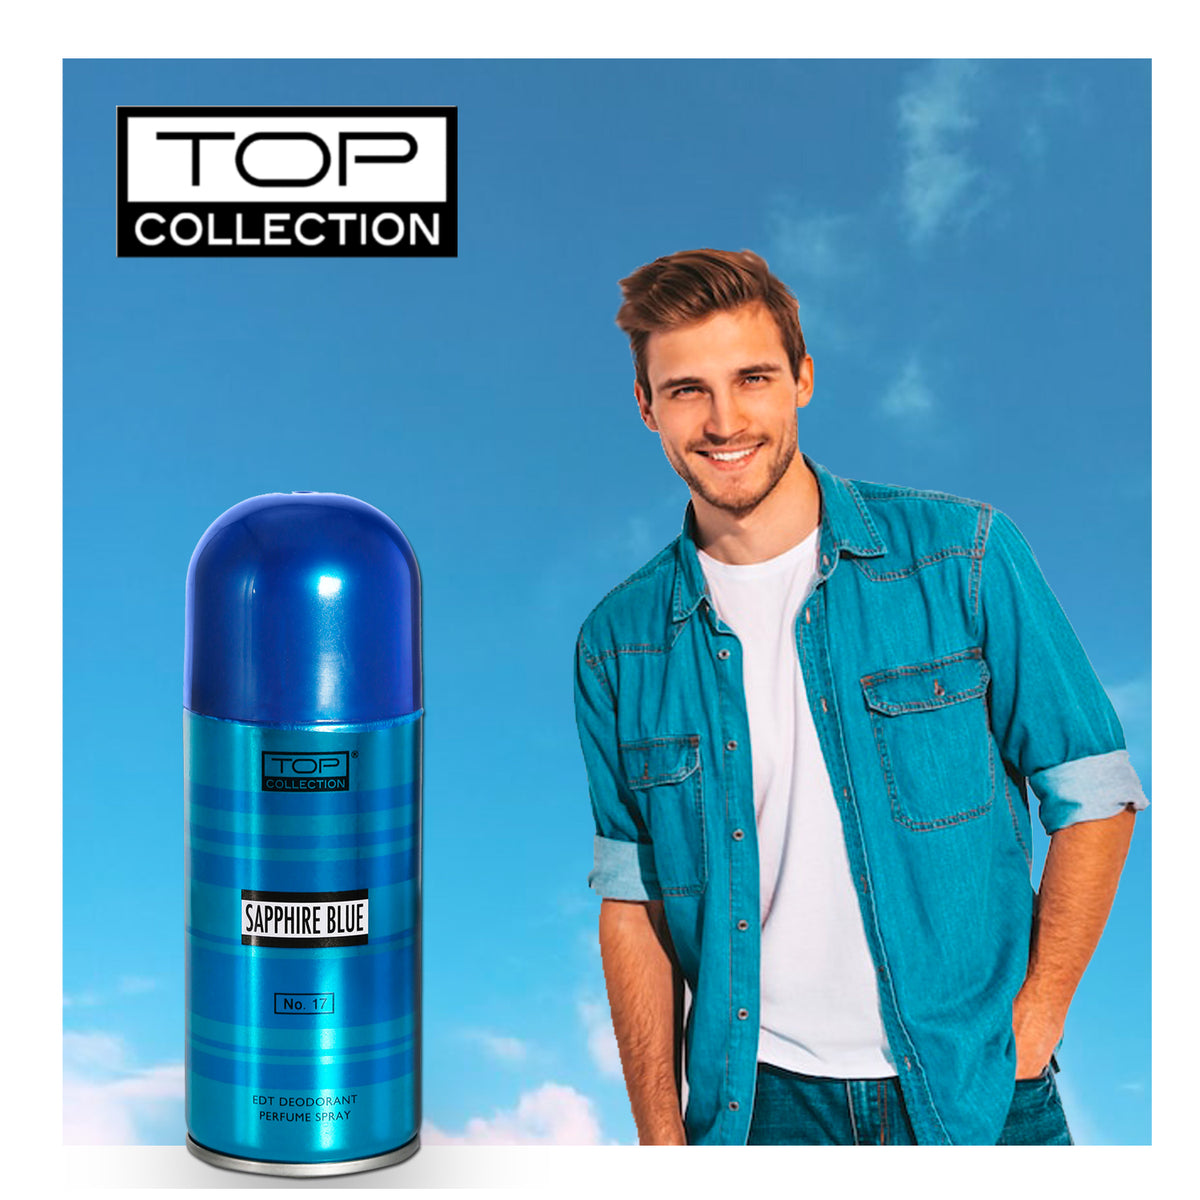 Top Collection Eau De Toilette Deodrant Perfume Spray - Sapphire Blue, 150ml